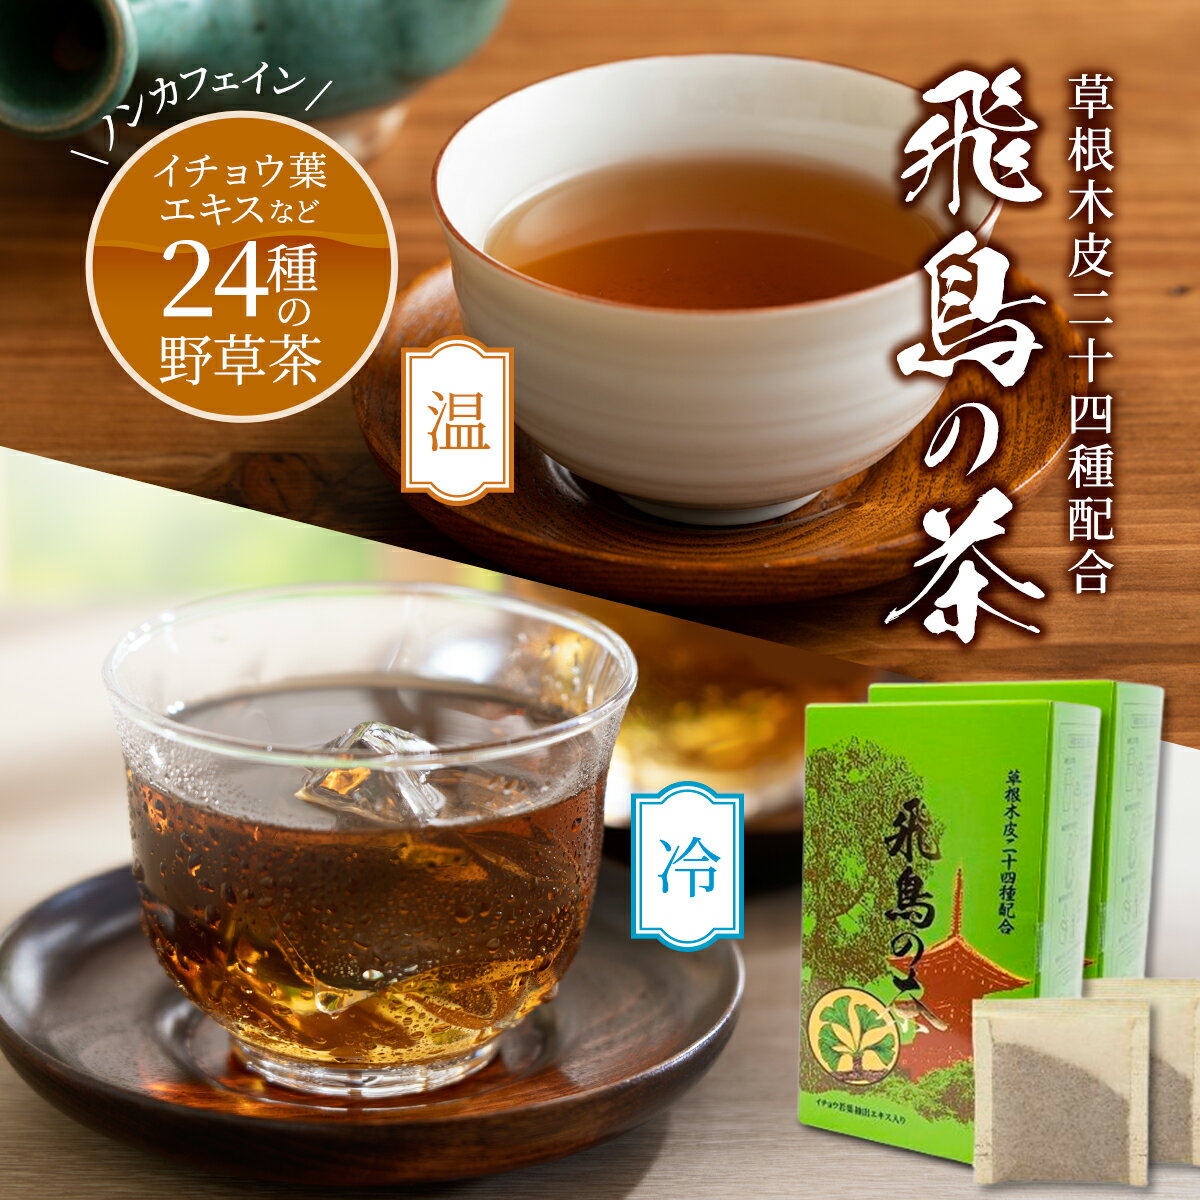 【送料無料】野草24種 ブレンド茶 